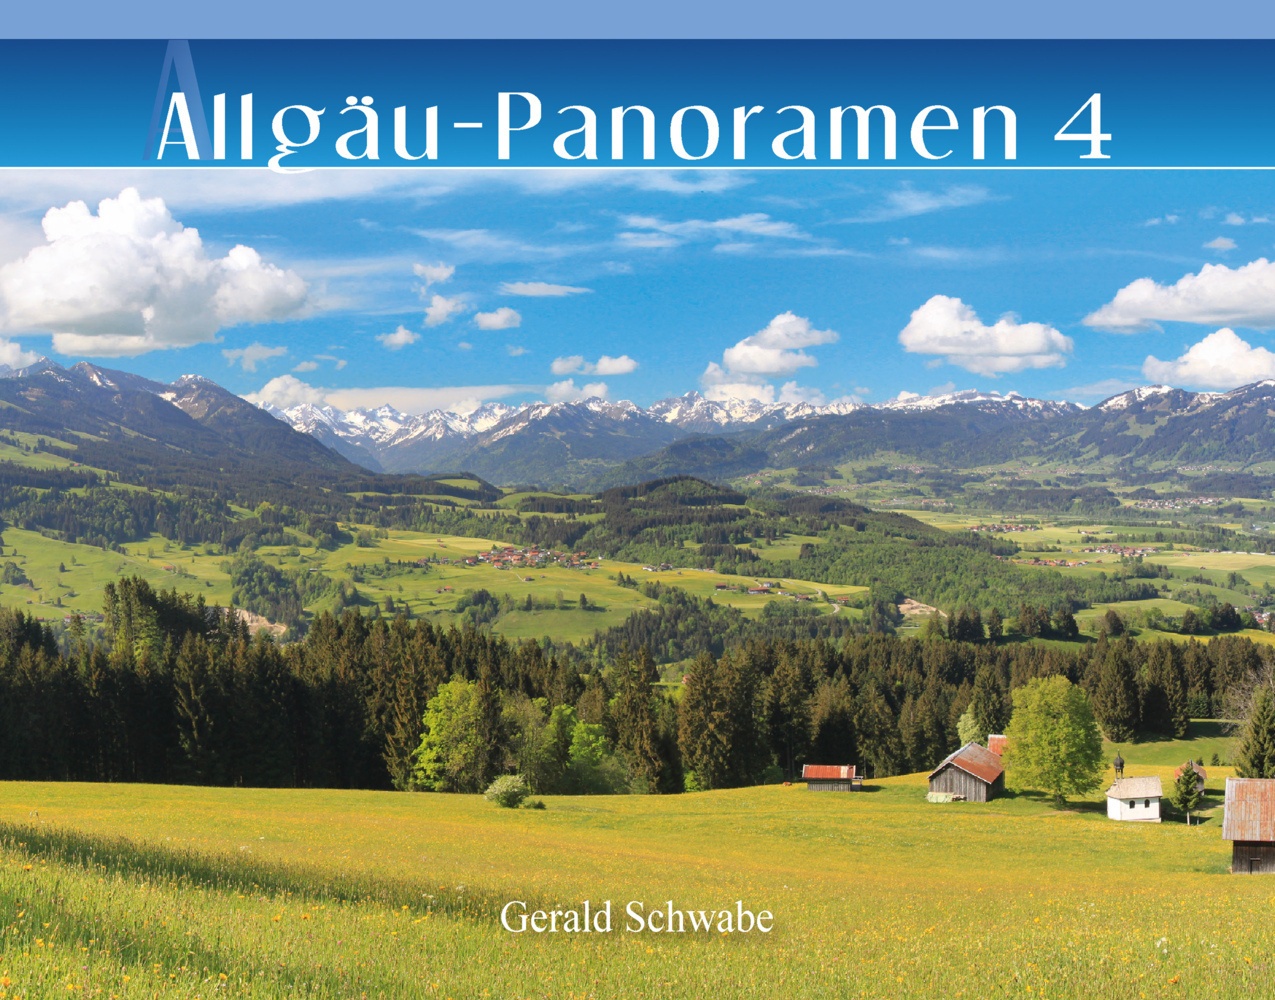 Allgäu-Panoramen 4 - Gerald Schwabe  Gebunden